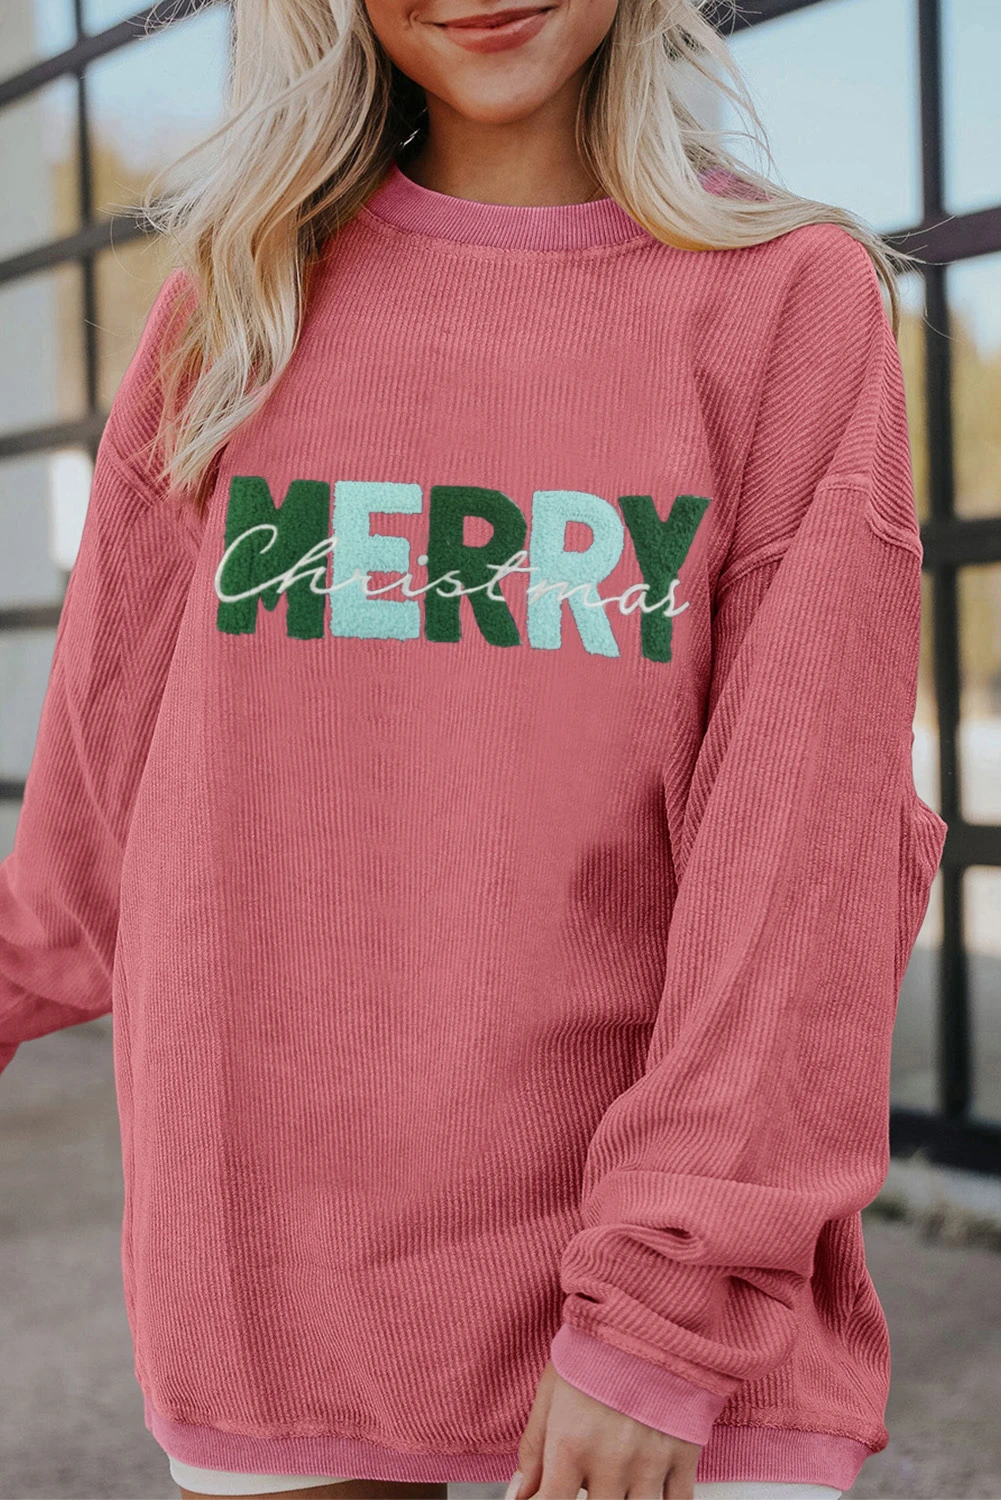 草莓粉色 MERRY Christmas 休闲套头衫 LC25312934